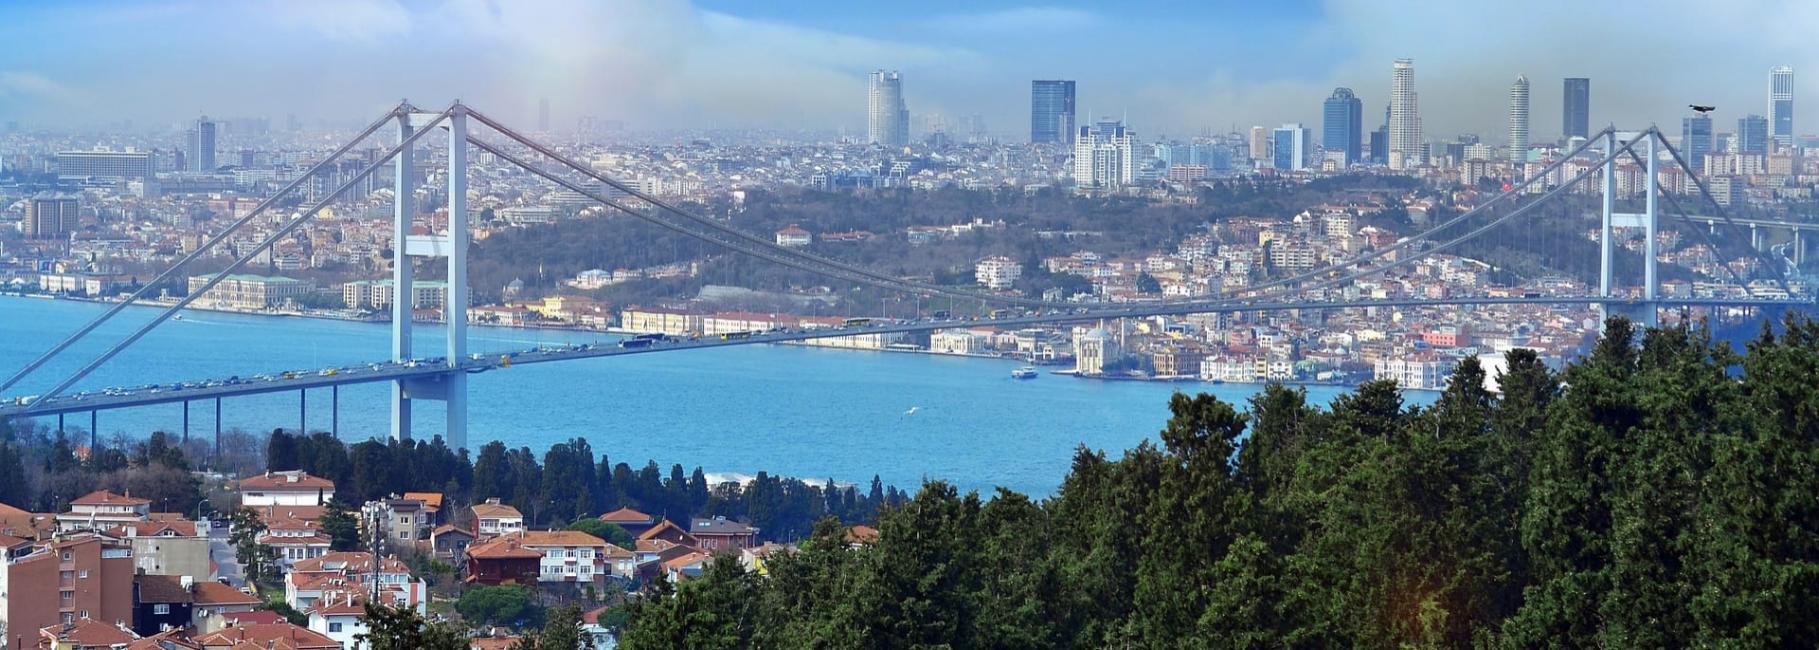 istanbul religious trip header slk fe